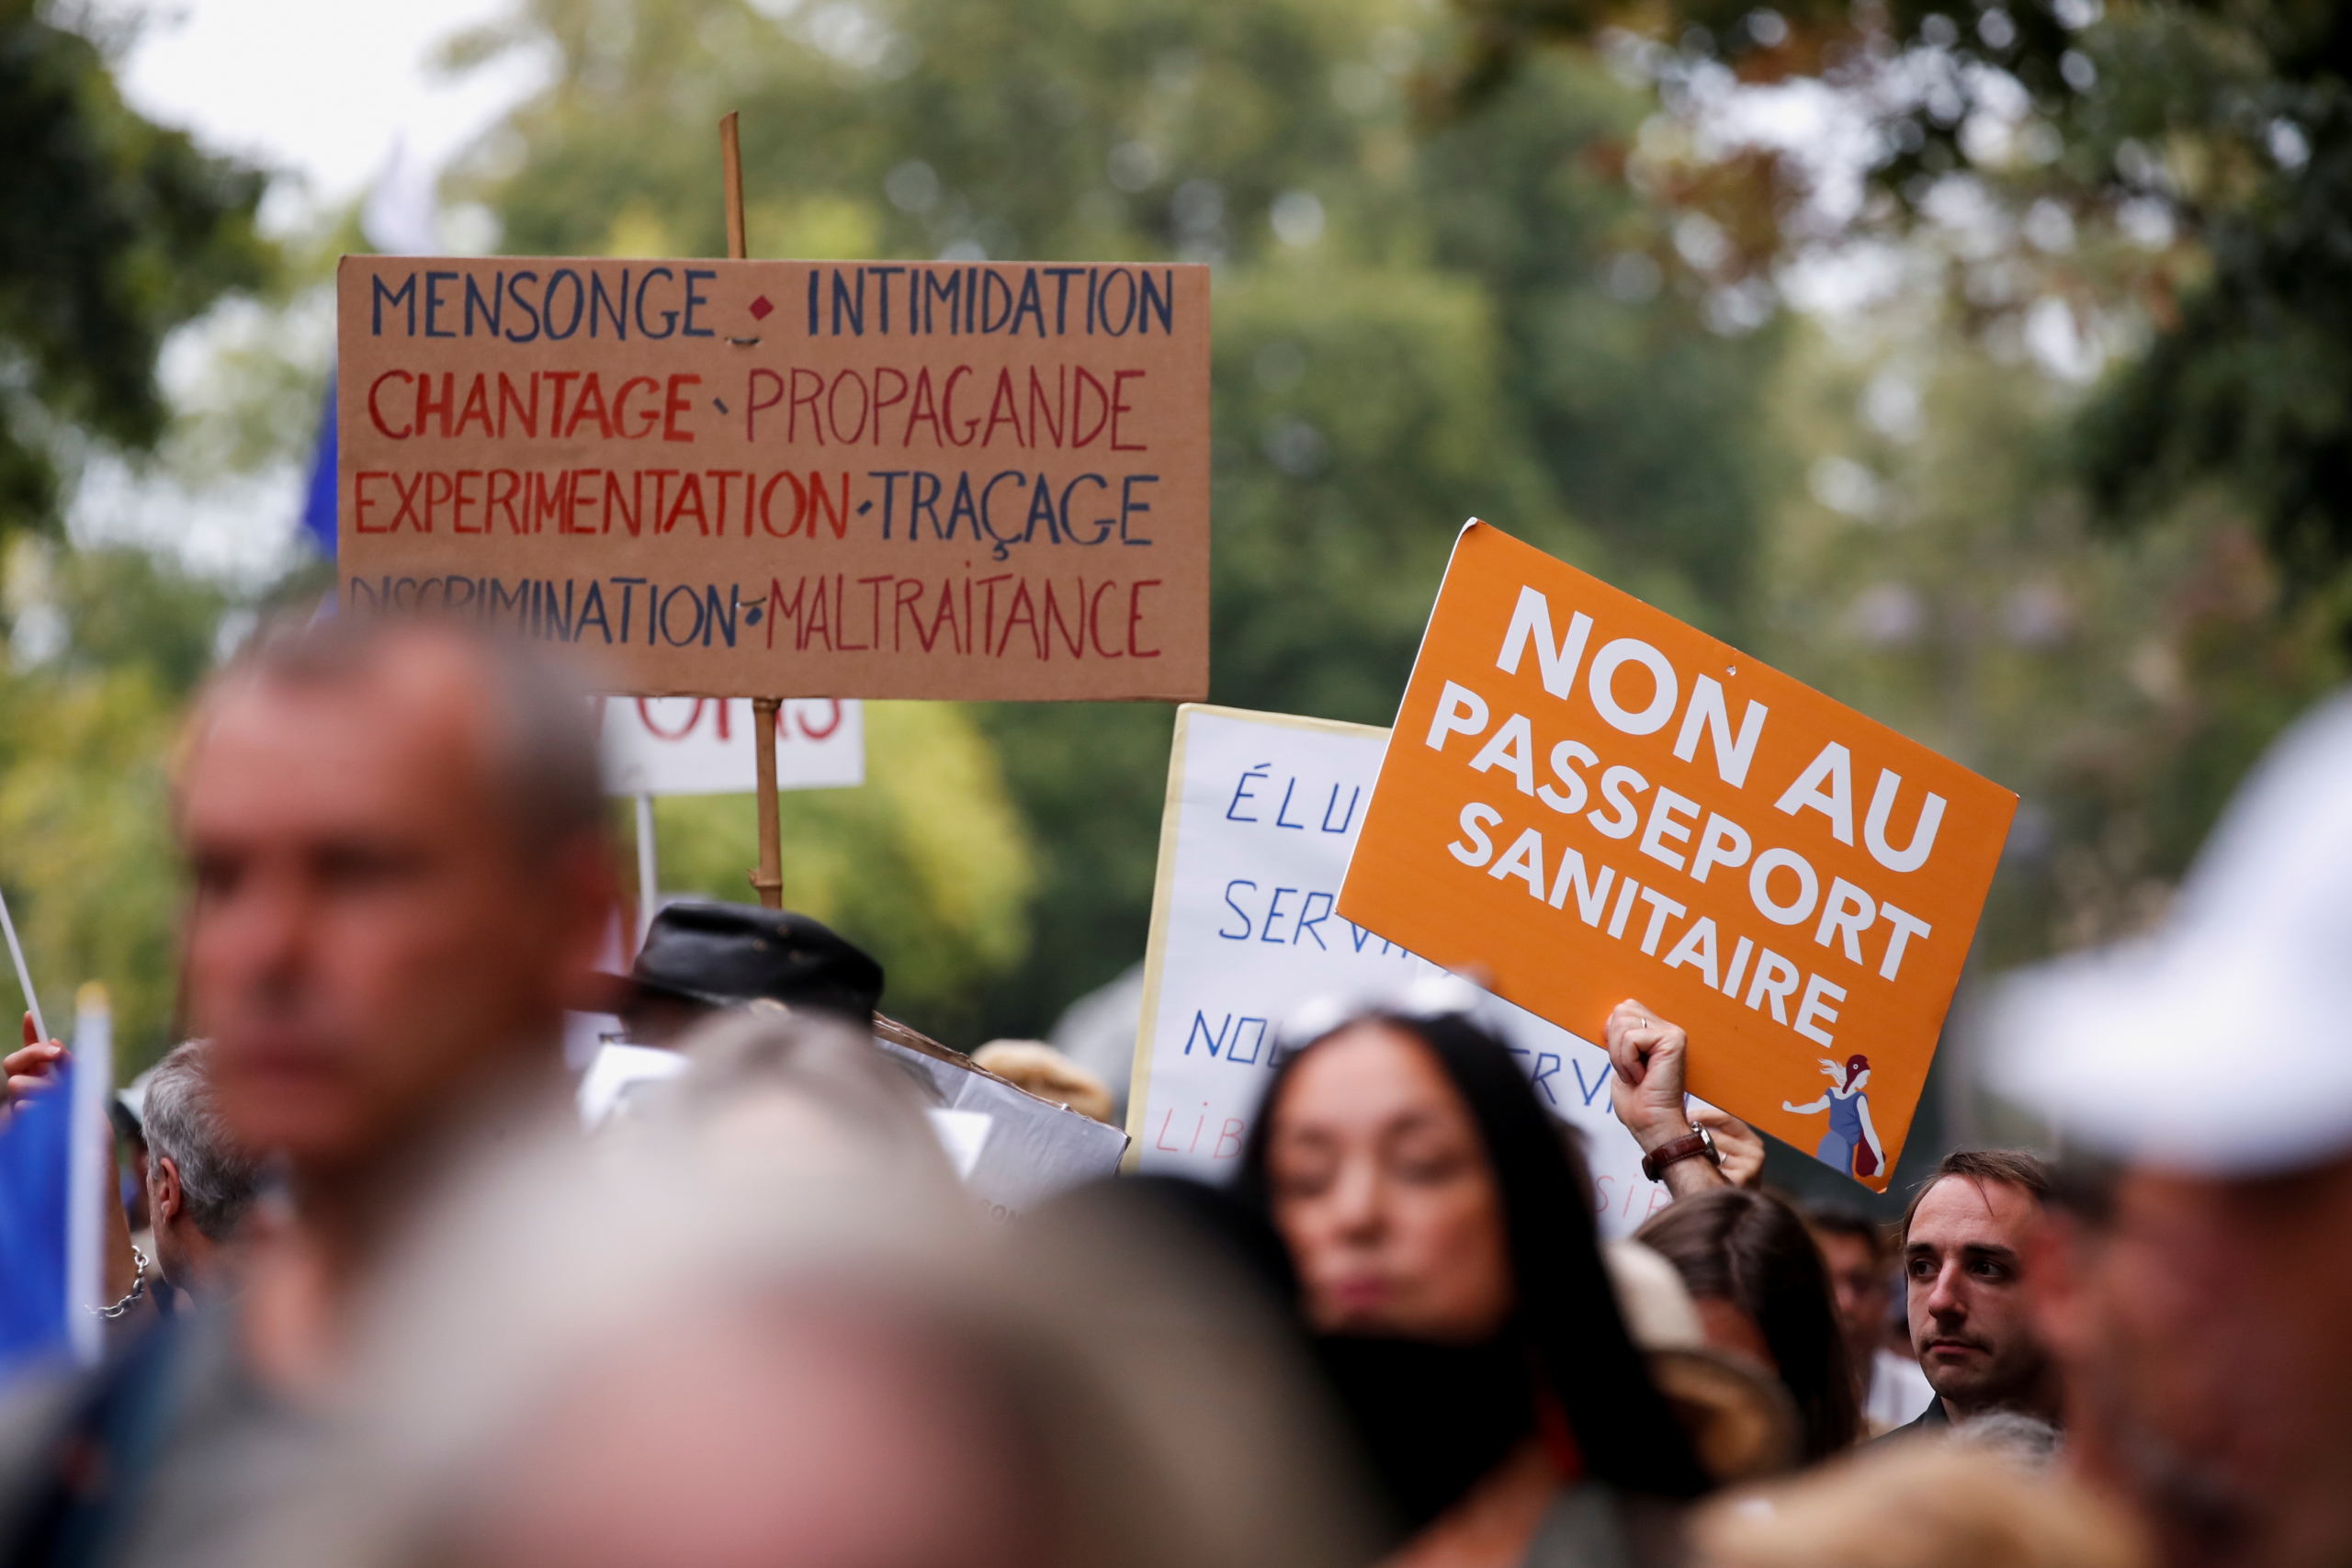 الاحتجاجات مستمرة بفرنسا ضد الشهادة الصحية ومطالب لإيقاف تلقيح الأطفال